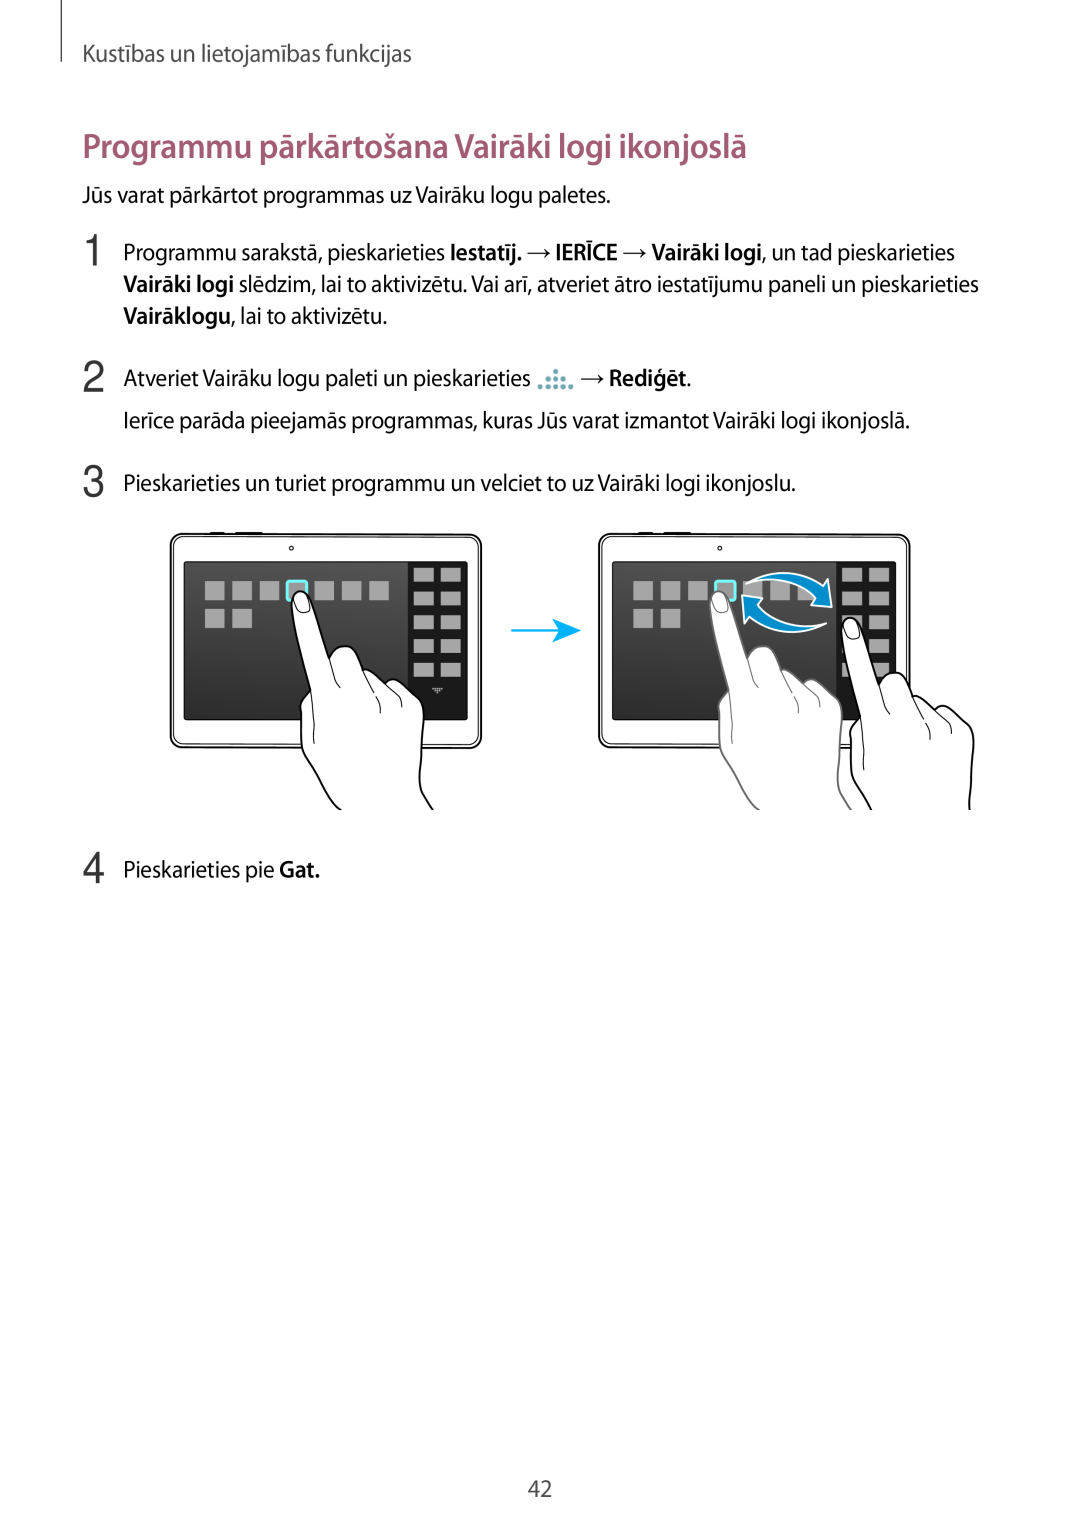 Samsung SM-T800NTSASEB, SM-T800NZWASEB Programmu pārkārtošana Vairāki logi ikonjoslā, Kustības un lietojamības funkcijas 